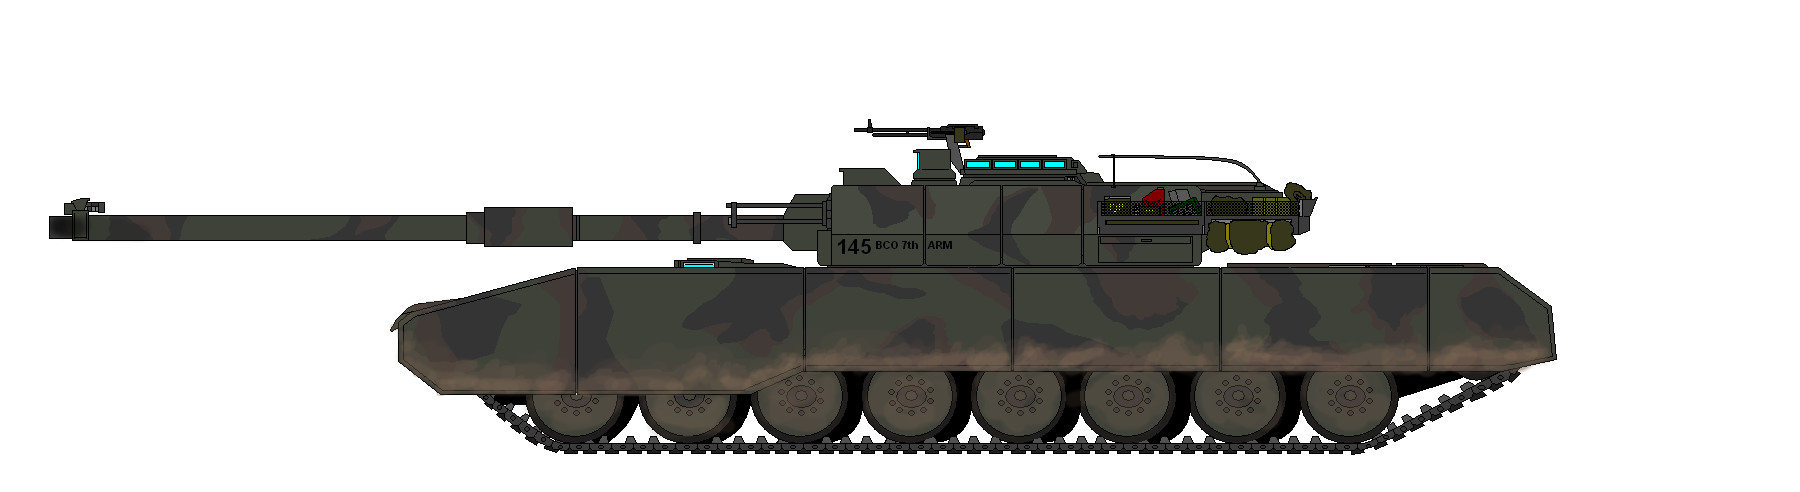 Tank Idea by PaintFan08 on DeviantArt